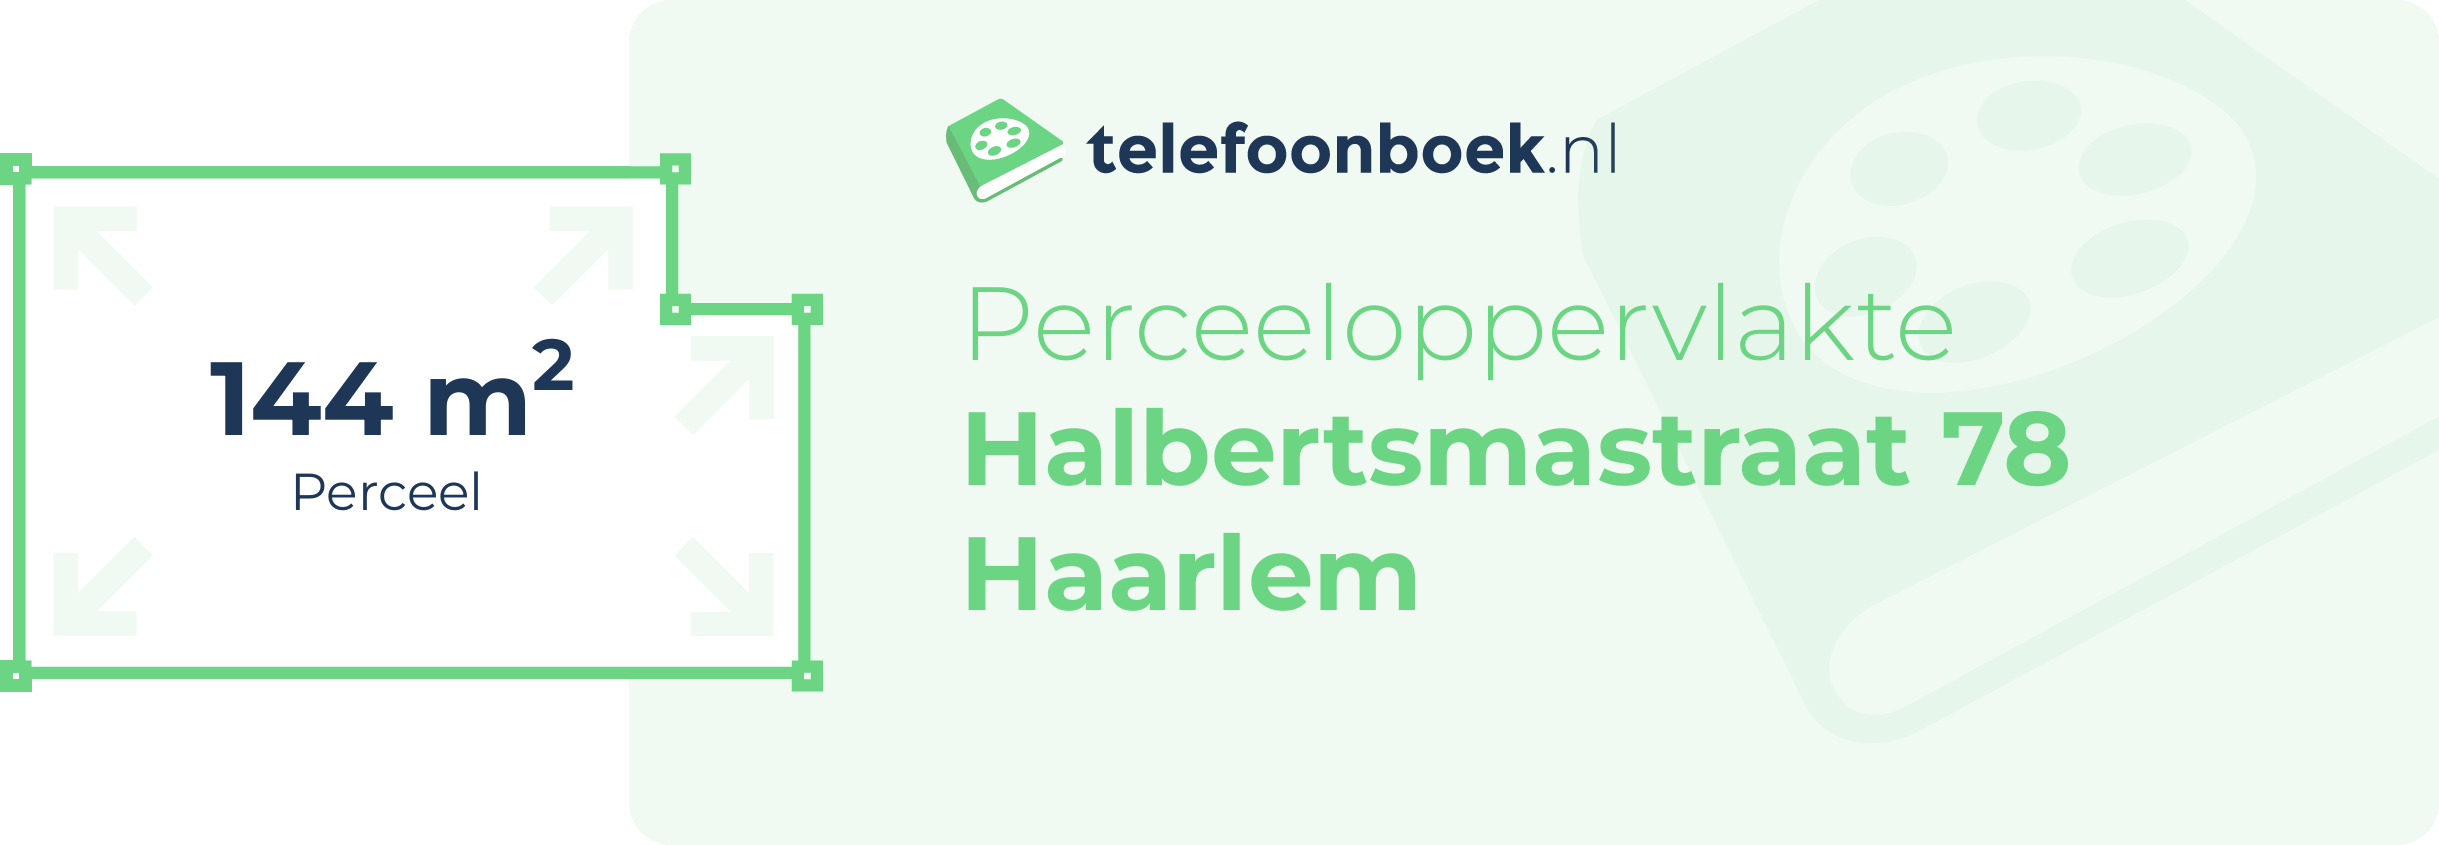 Perceeloppervlakte Halbertsmastraat 78 Haarlem